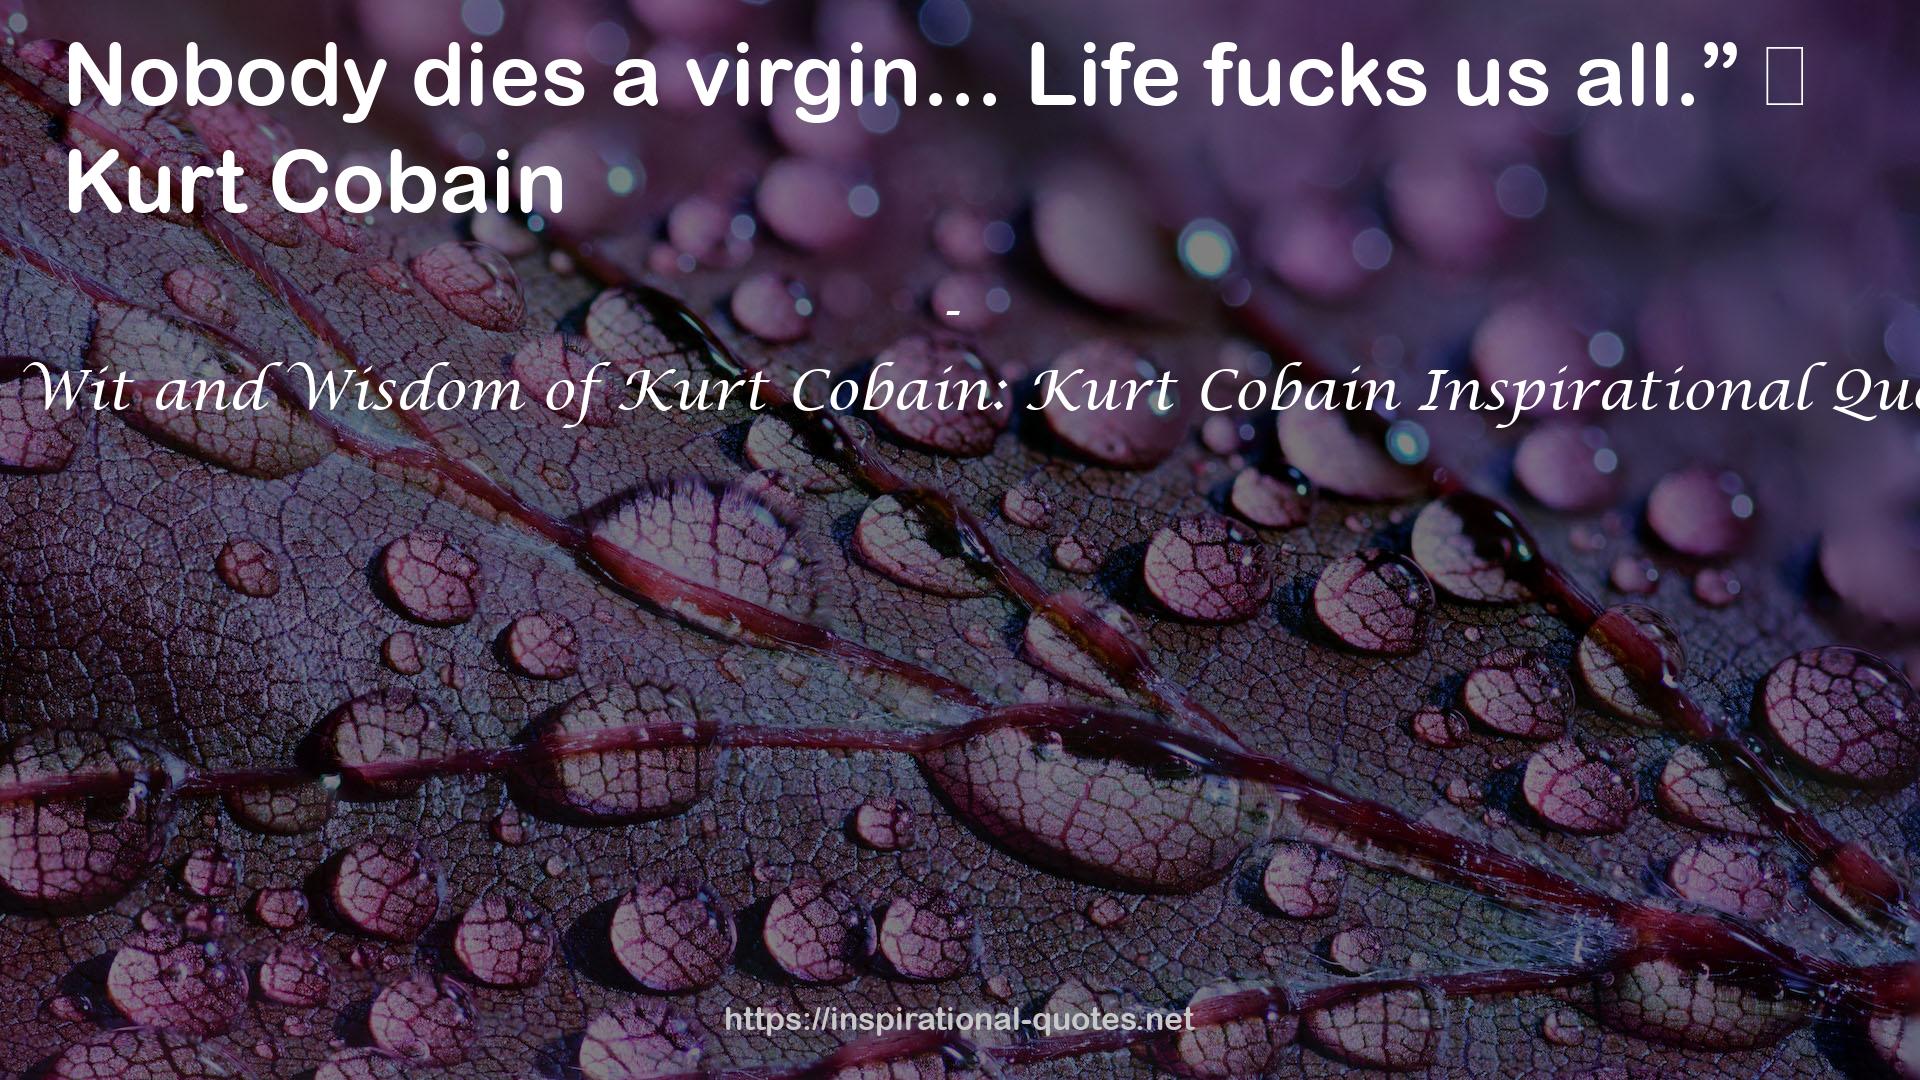 The Wit and Wisdom of Kurt Cobain: Kurt Cobain Inspirational Quotes QUOTES